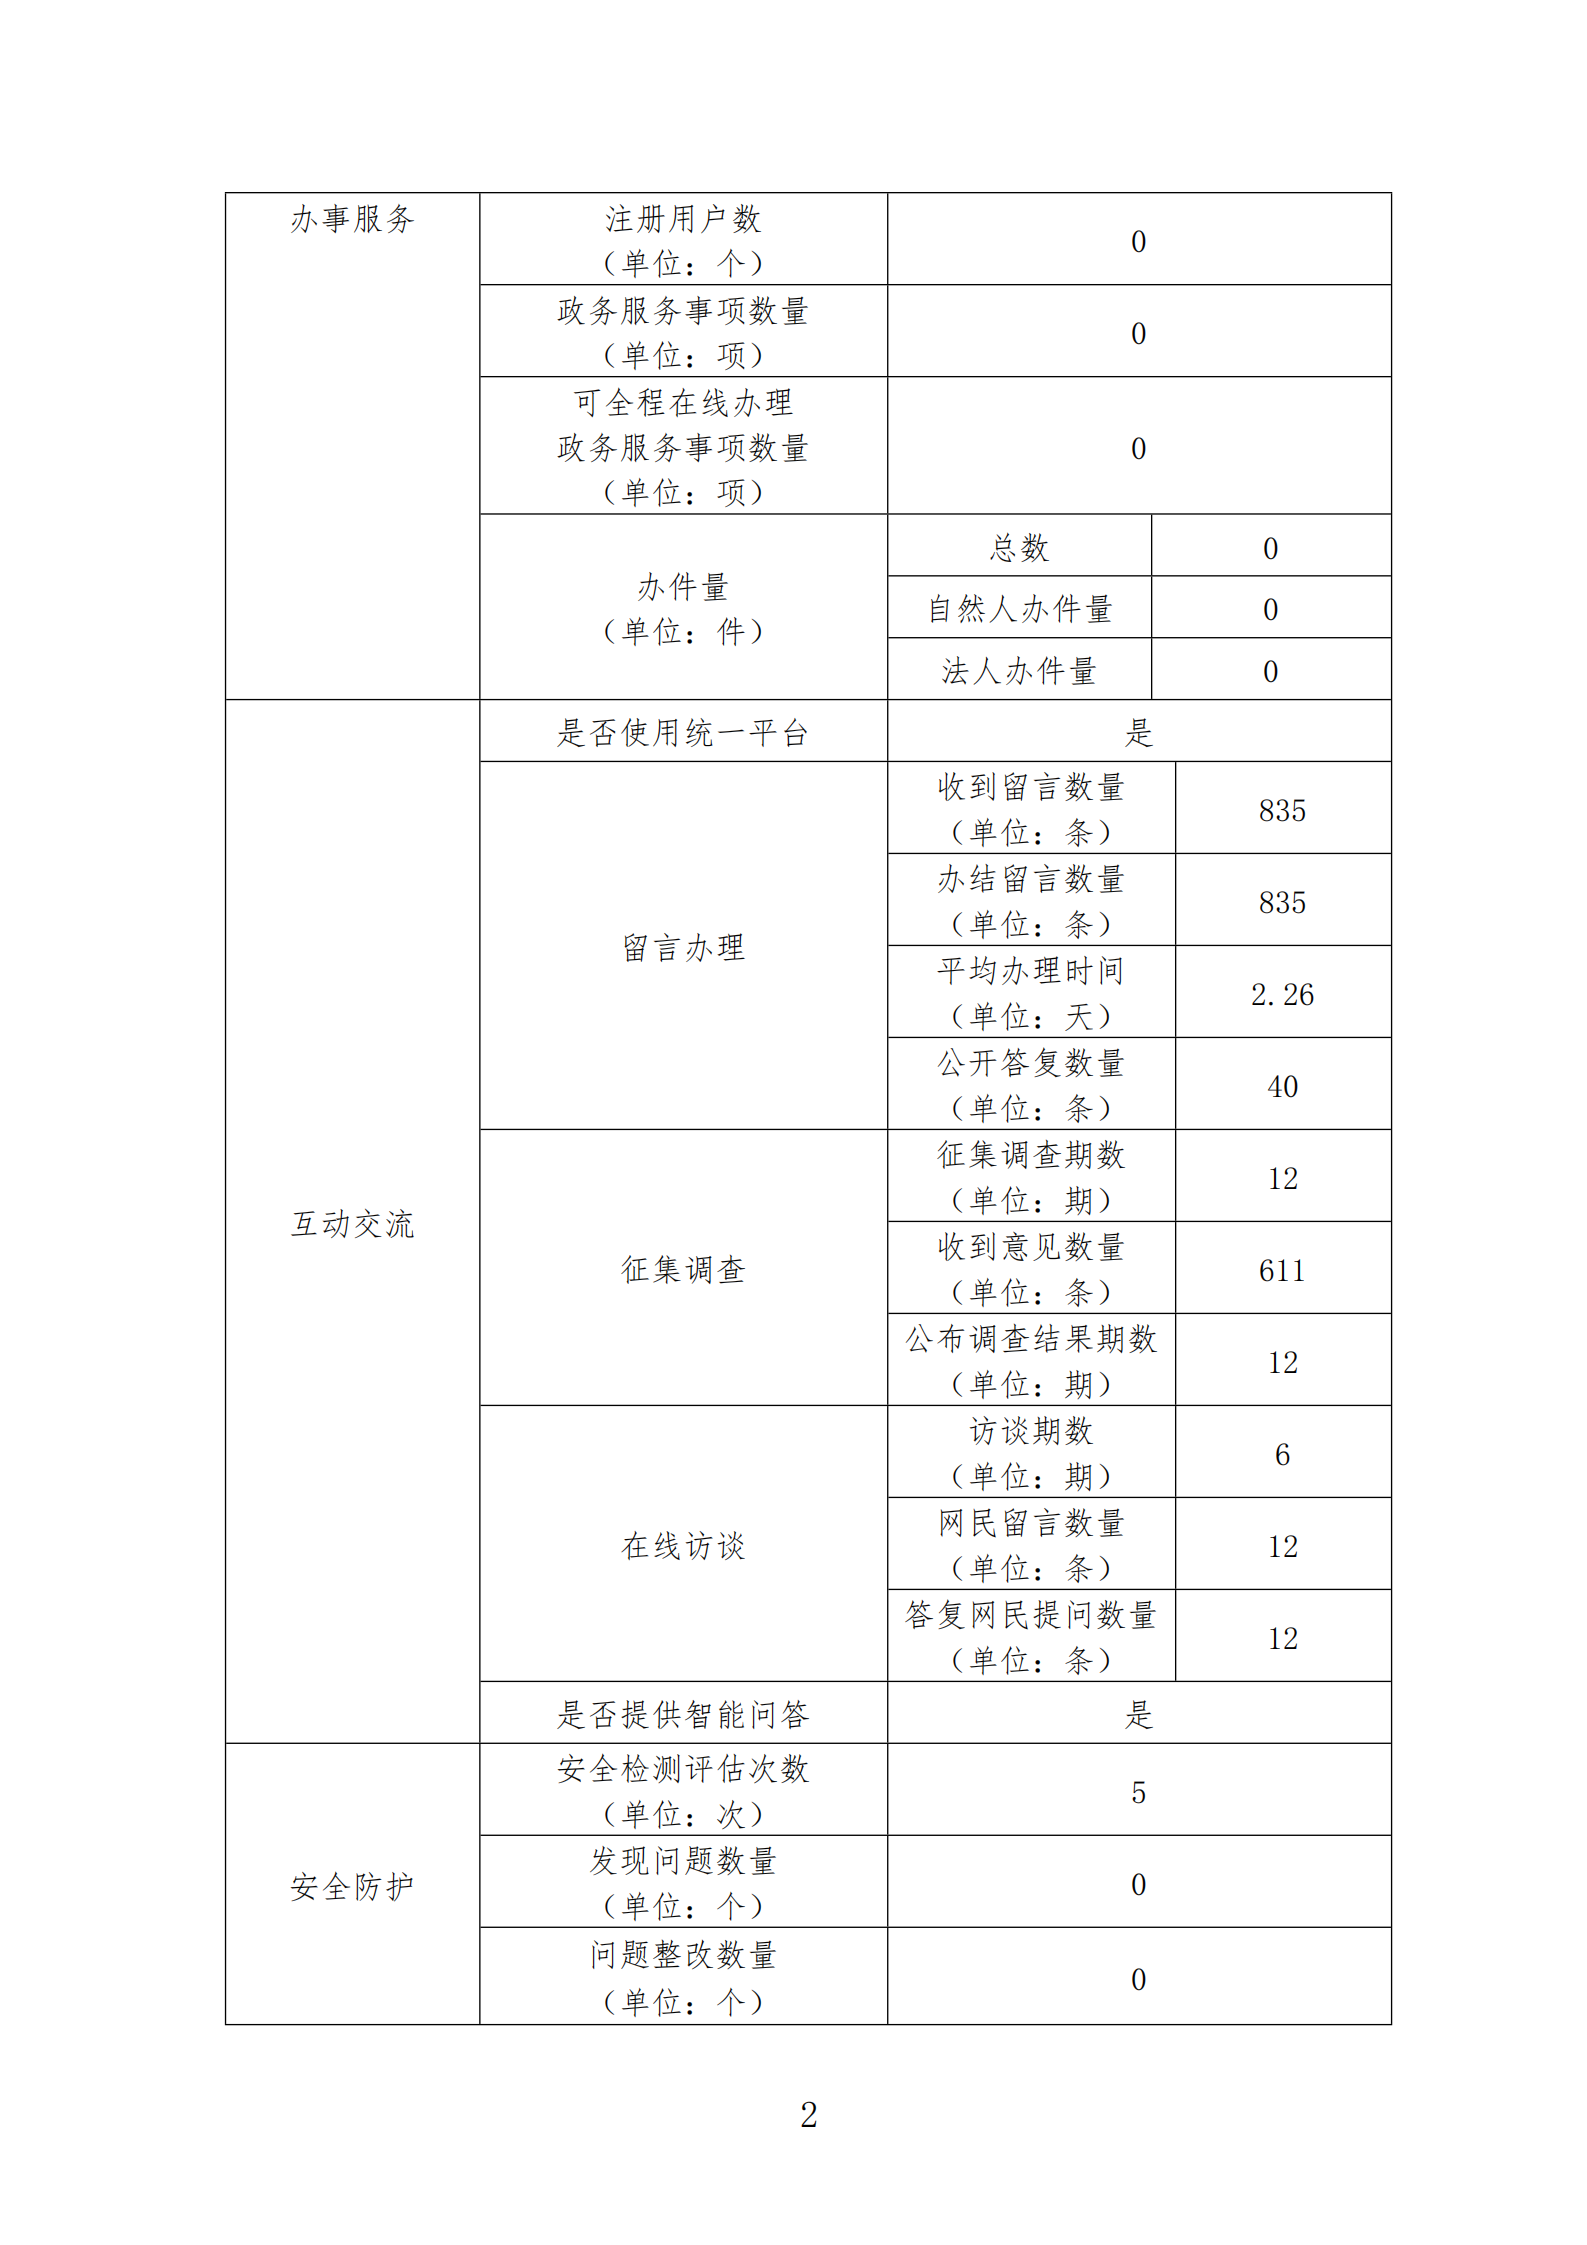 广东省医疗保障局政府网站工作报表（2020年度）_01.png